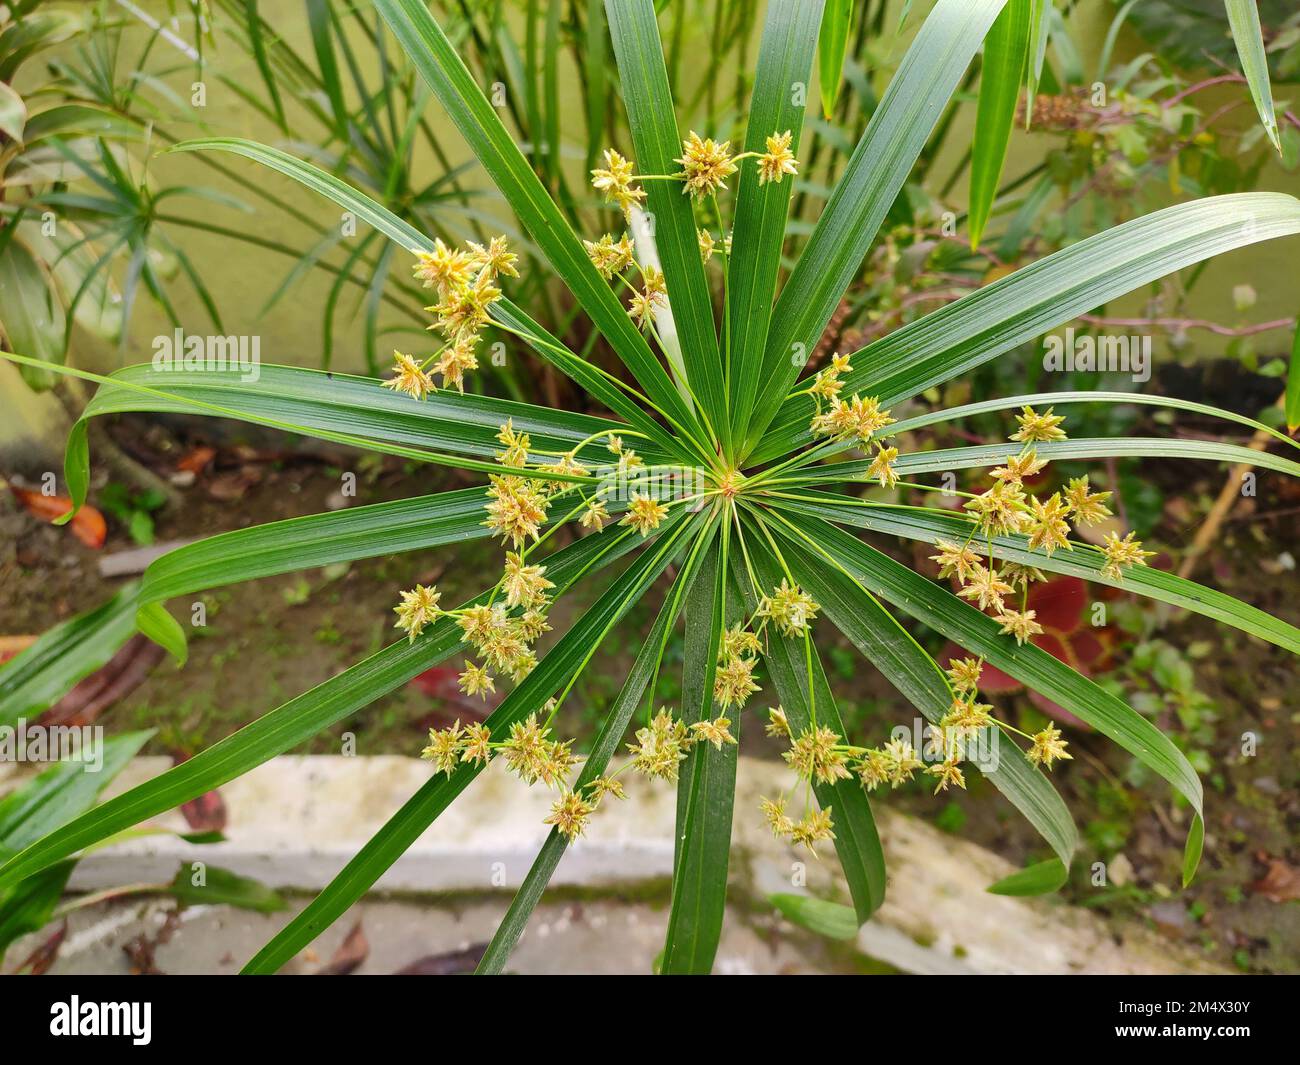 Ornamental plant - Cyperus alternifolius. Family - Cyperaceae. Common name- umbrella papyrus, umbrella sedge or umbrella palm. Stock Photo